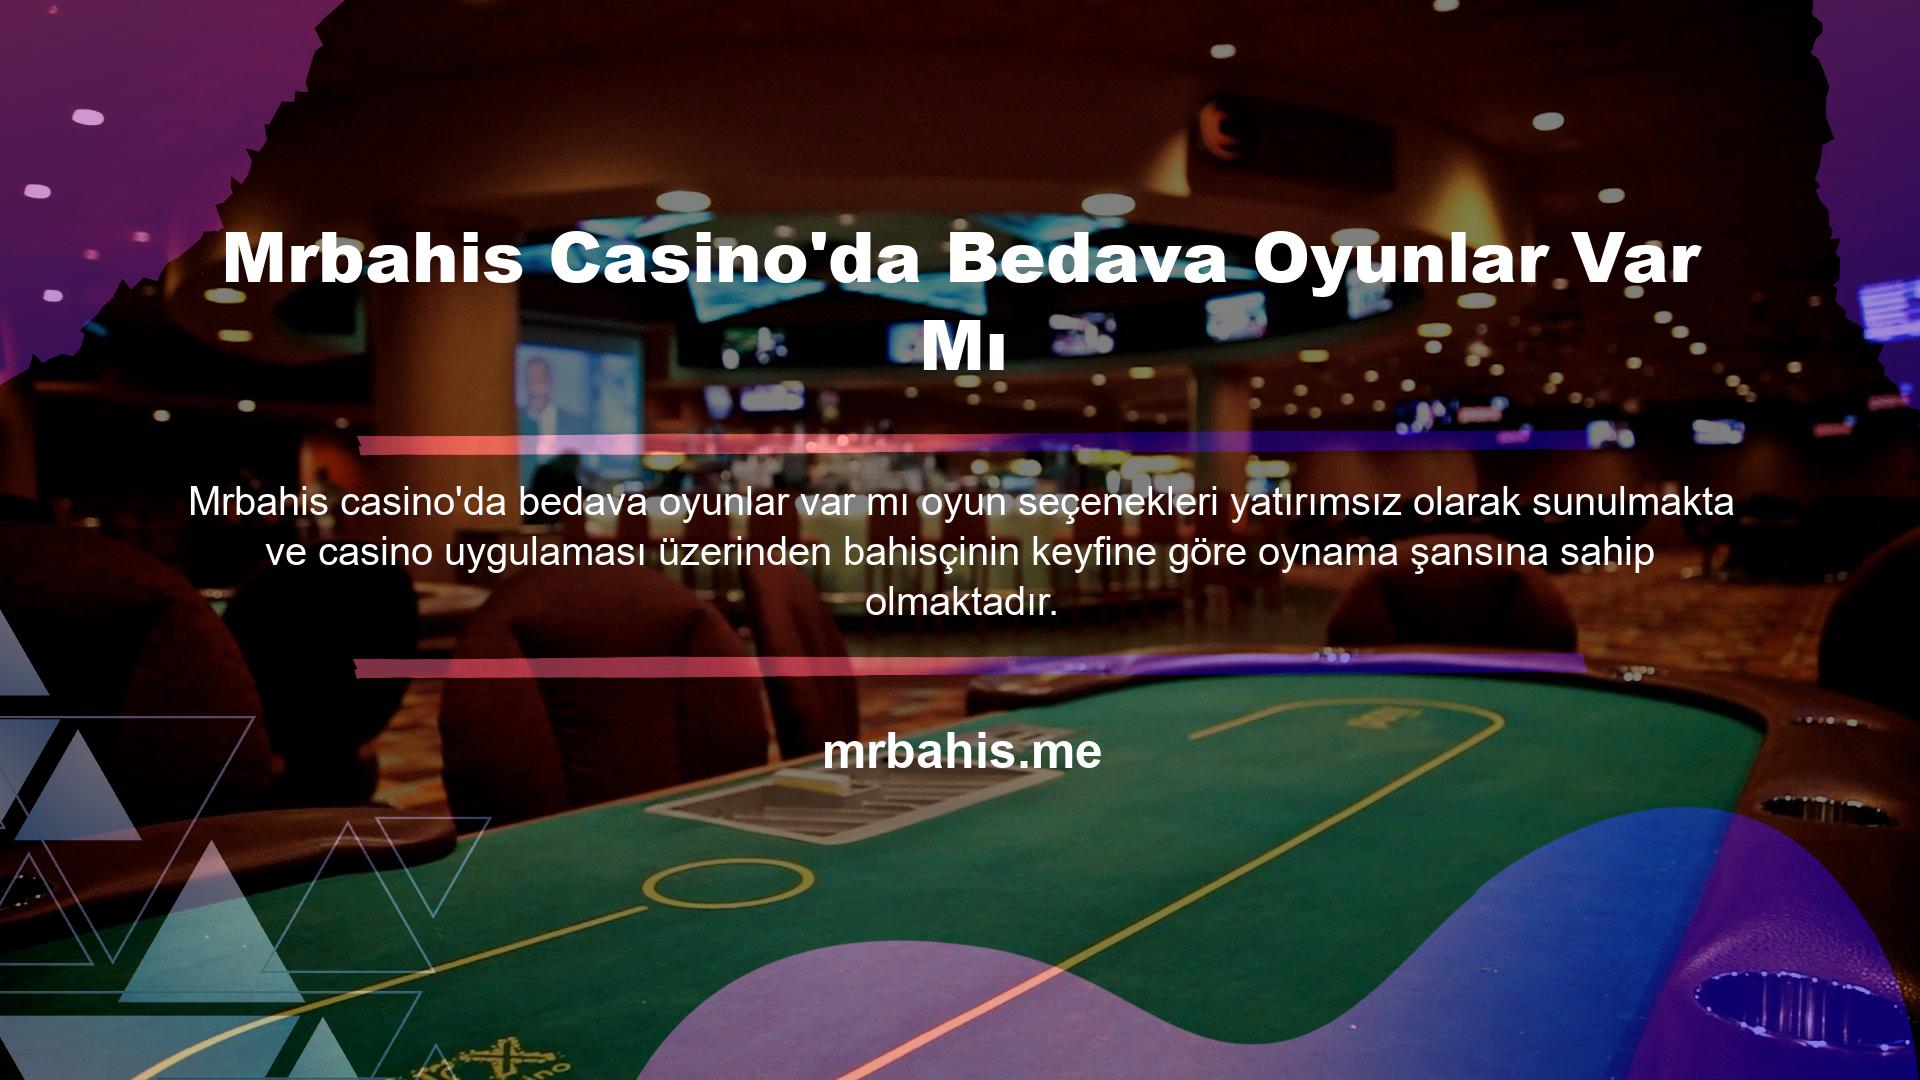 Ayrıca Mrbahis Casino bedava oyun sunuyor mu sorusunun cevabı evettir